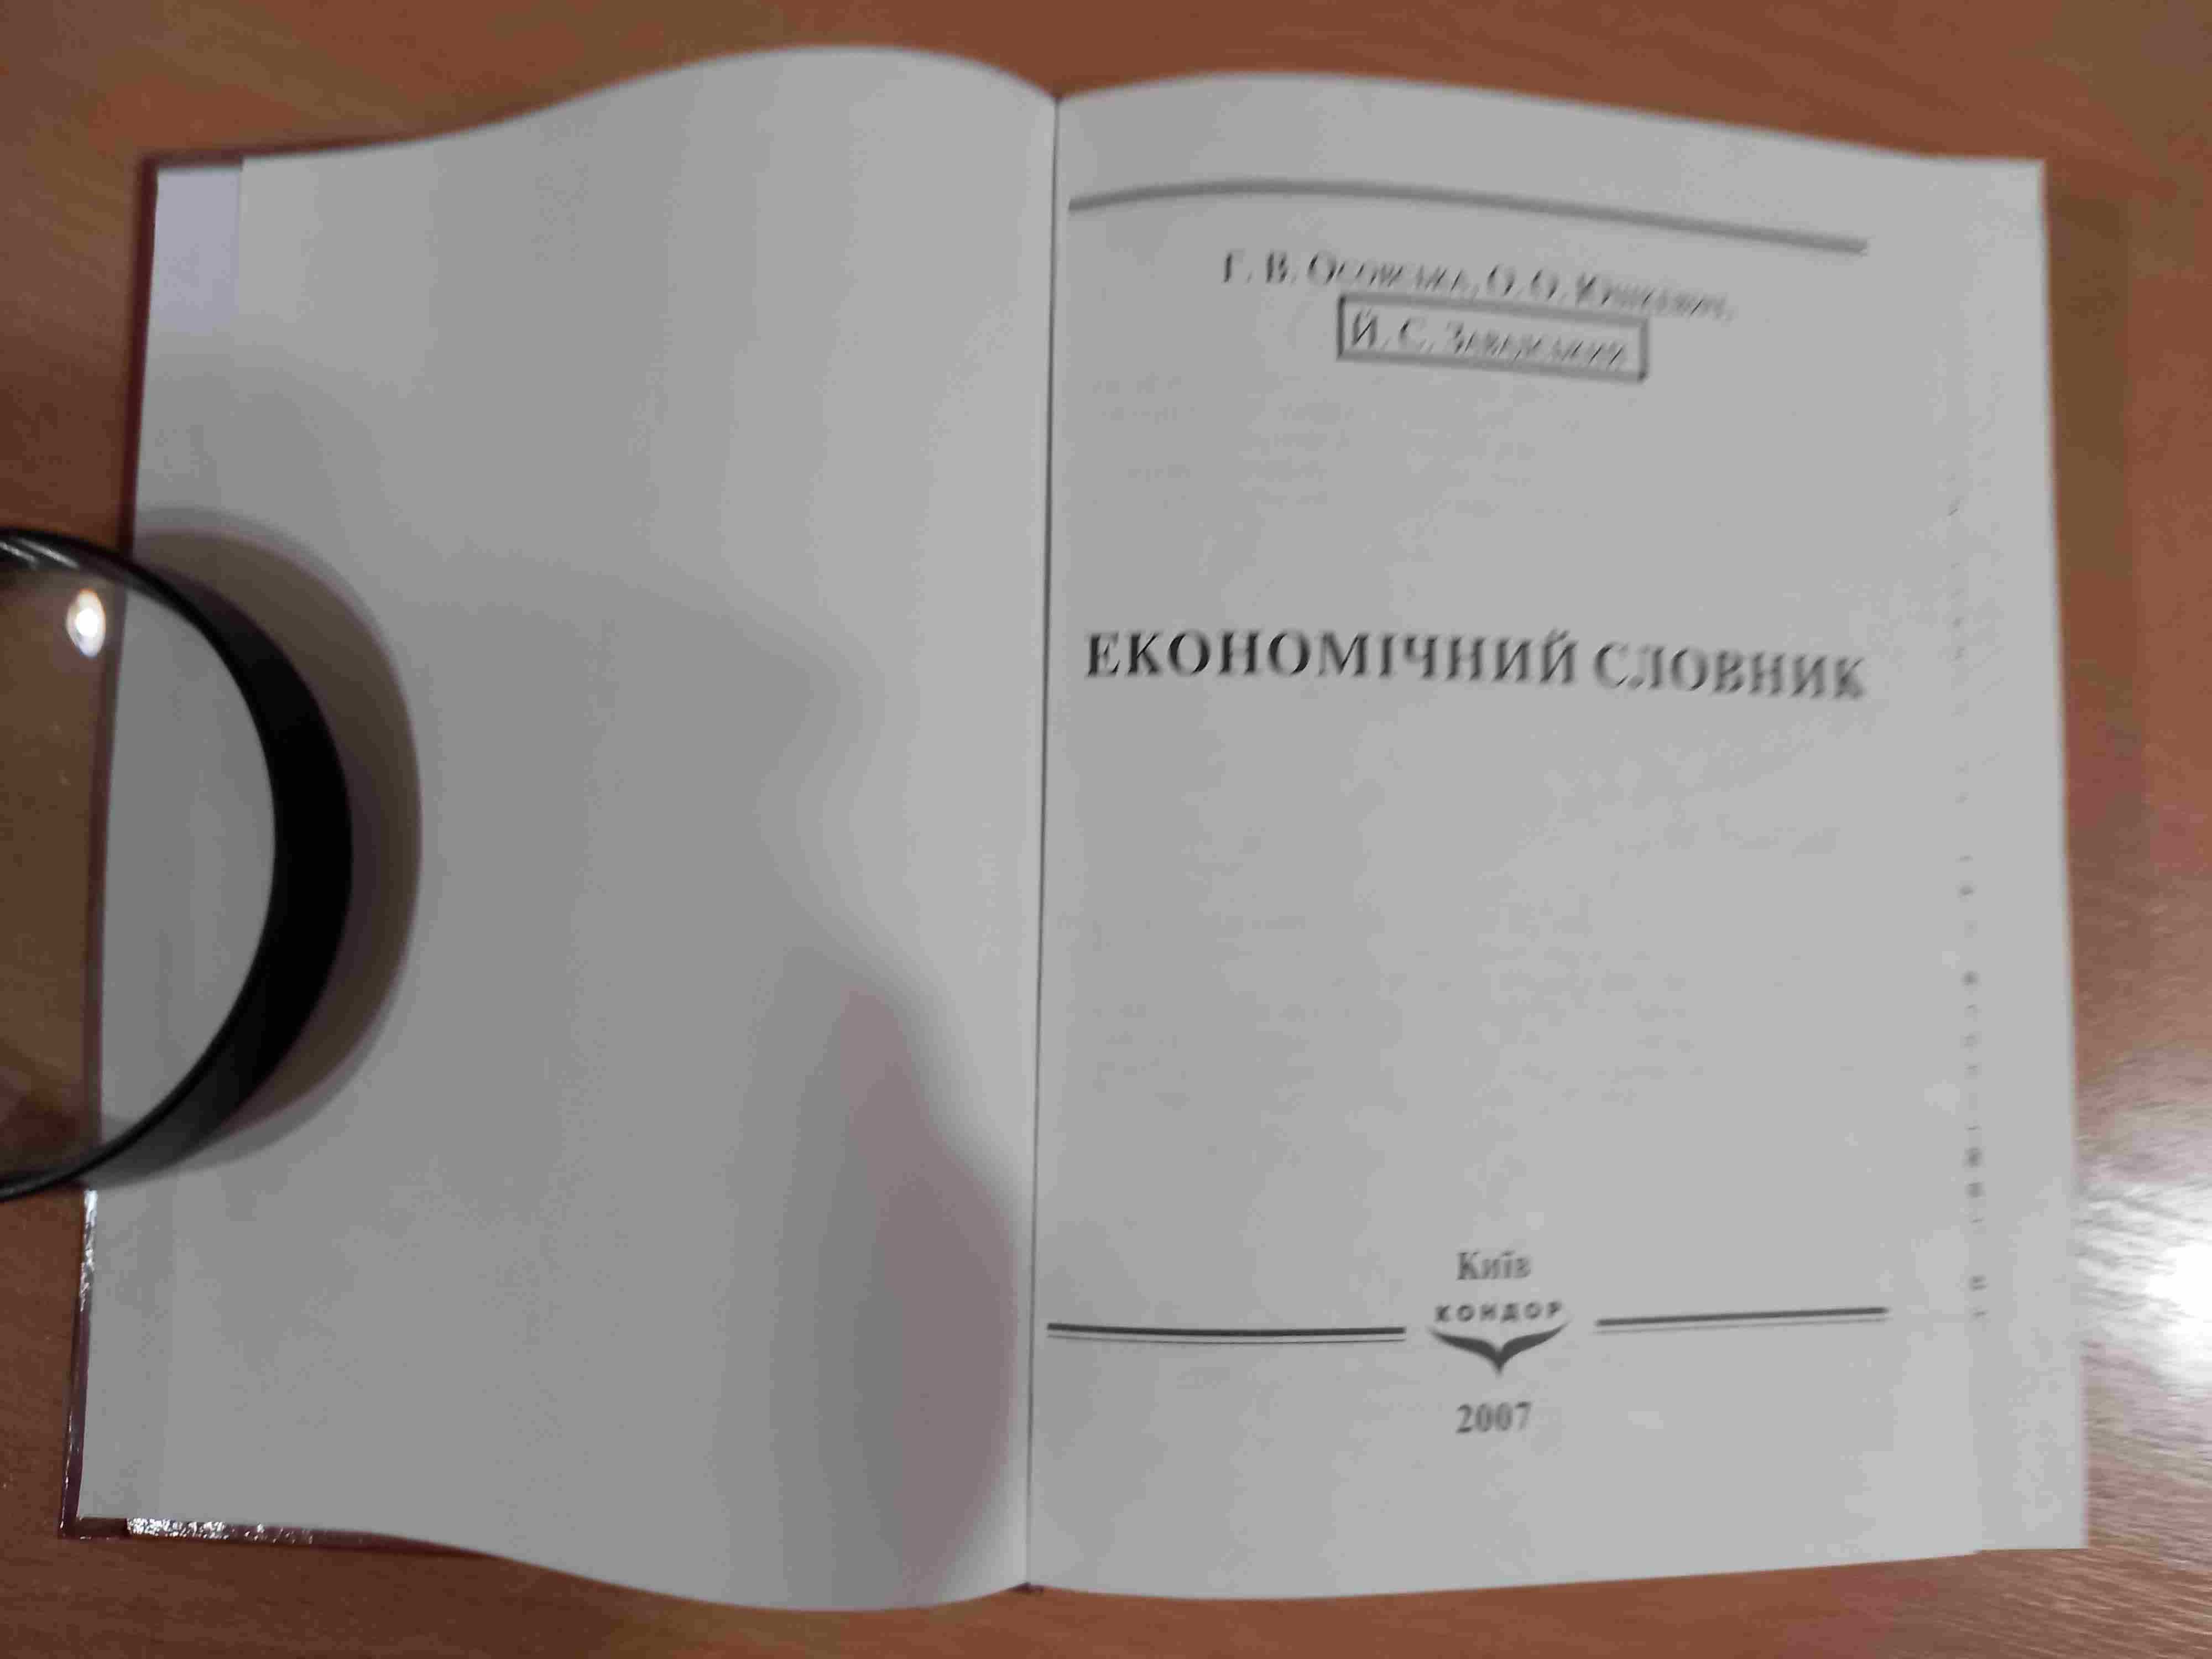 Економічний словник • Осовська • Київ • Кондор • 2007